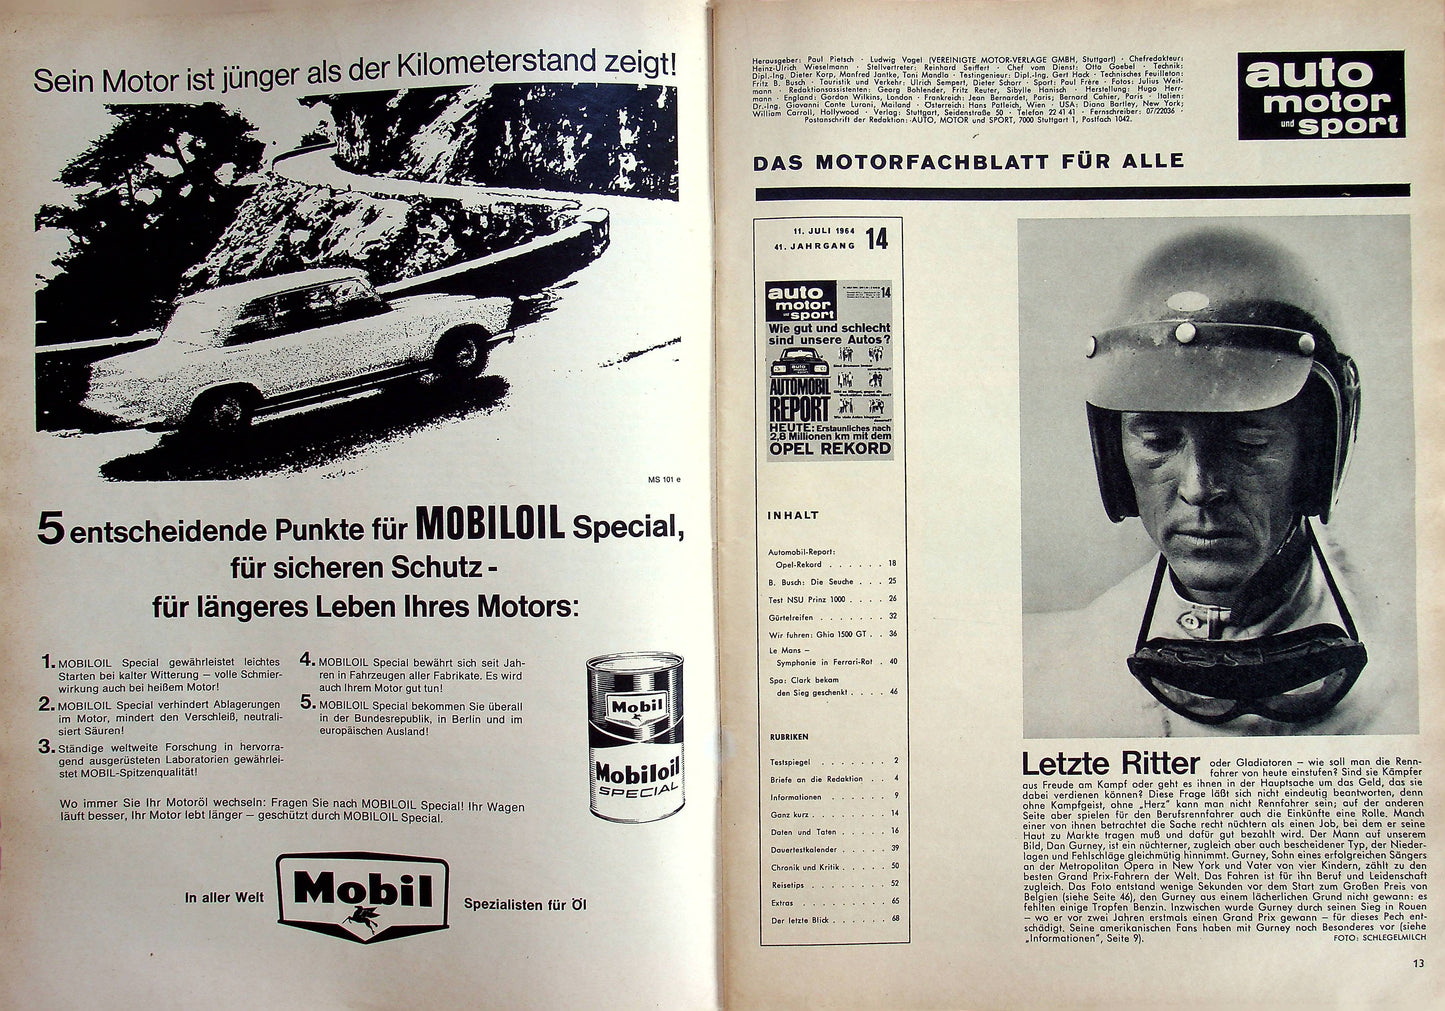 Auto Motor und Sport 14/1964